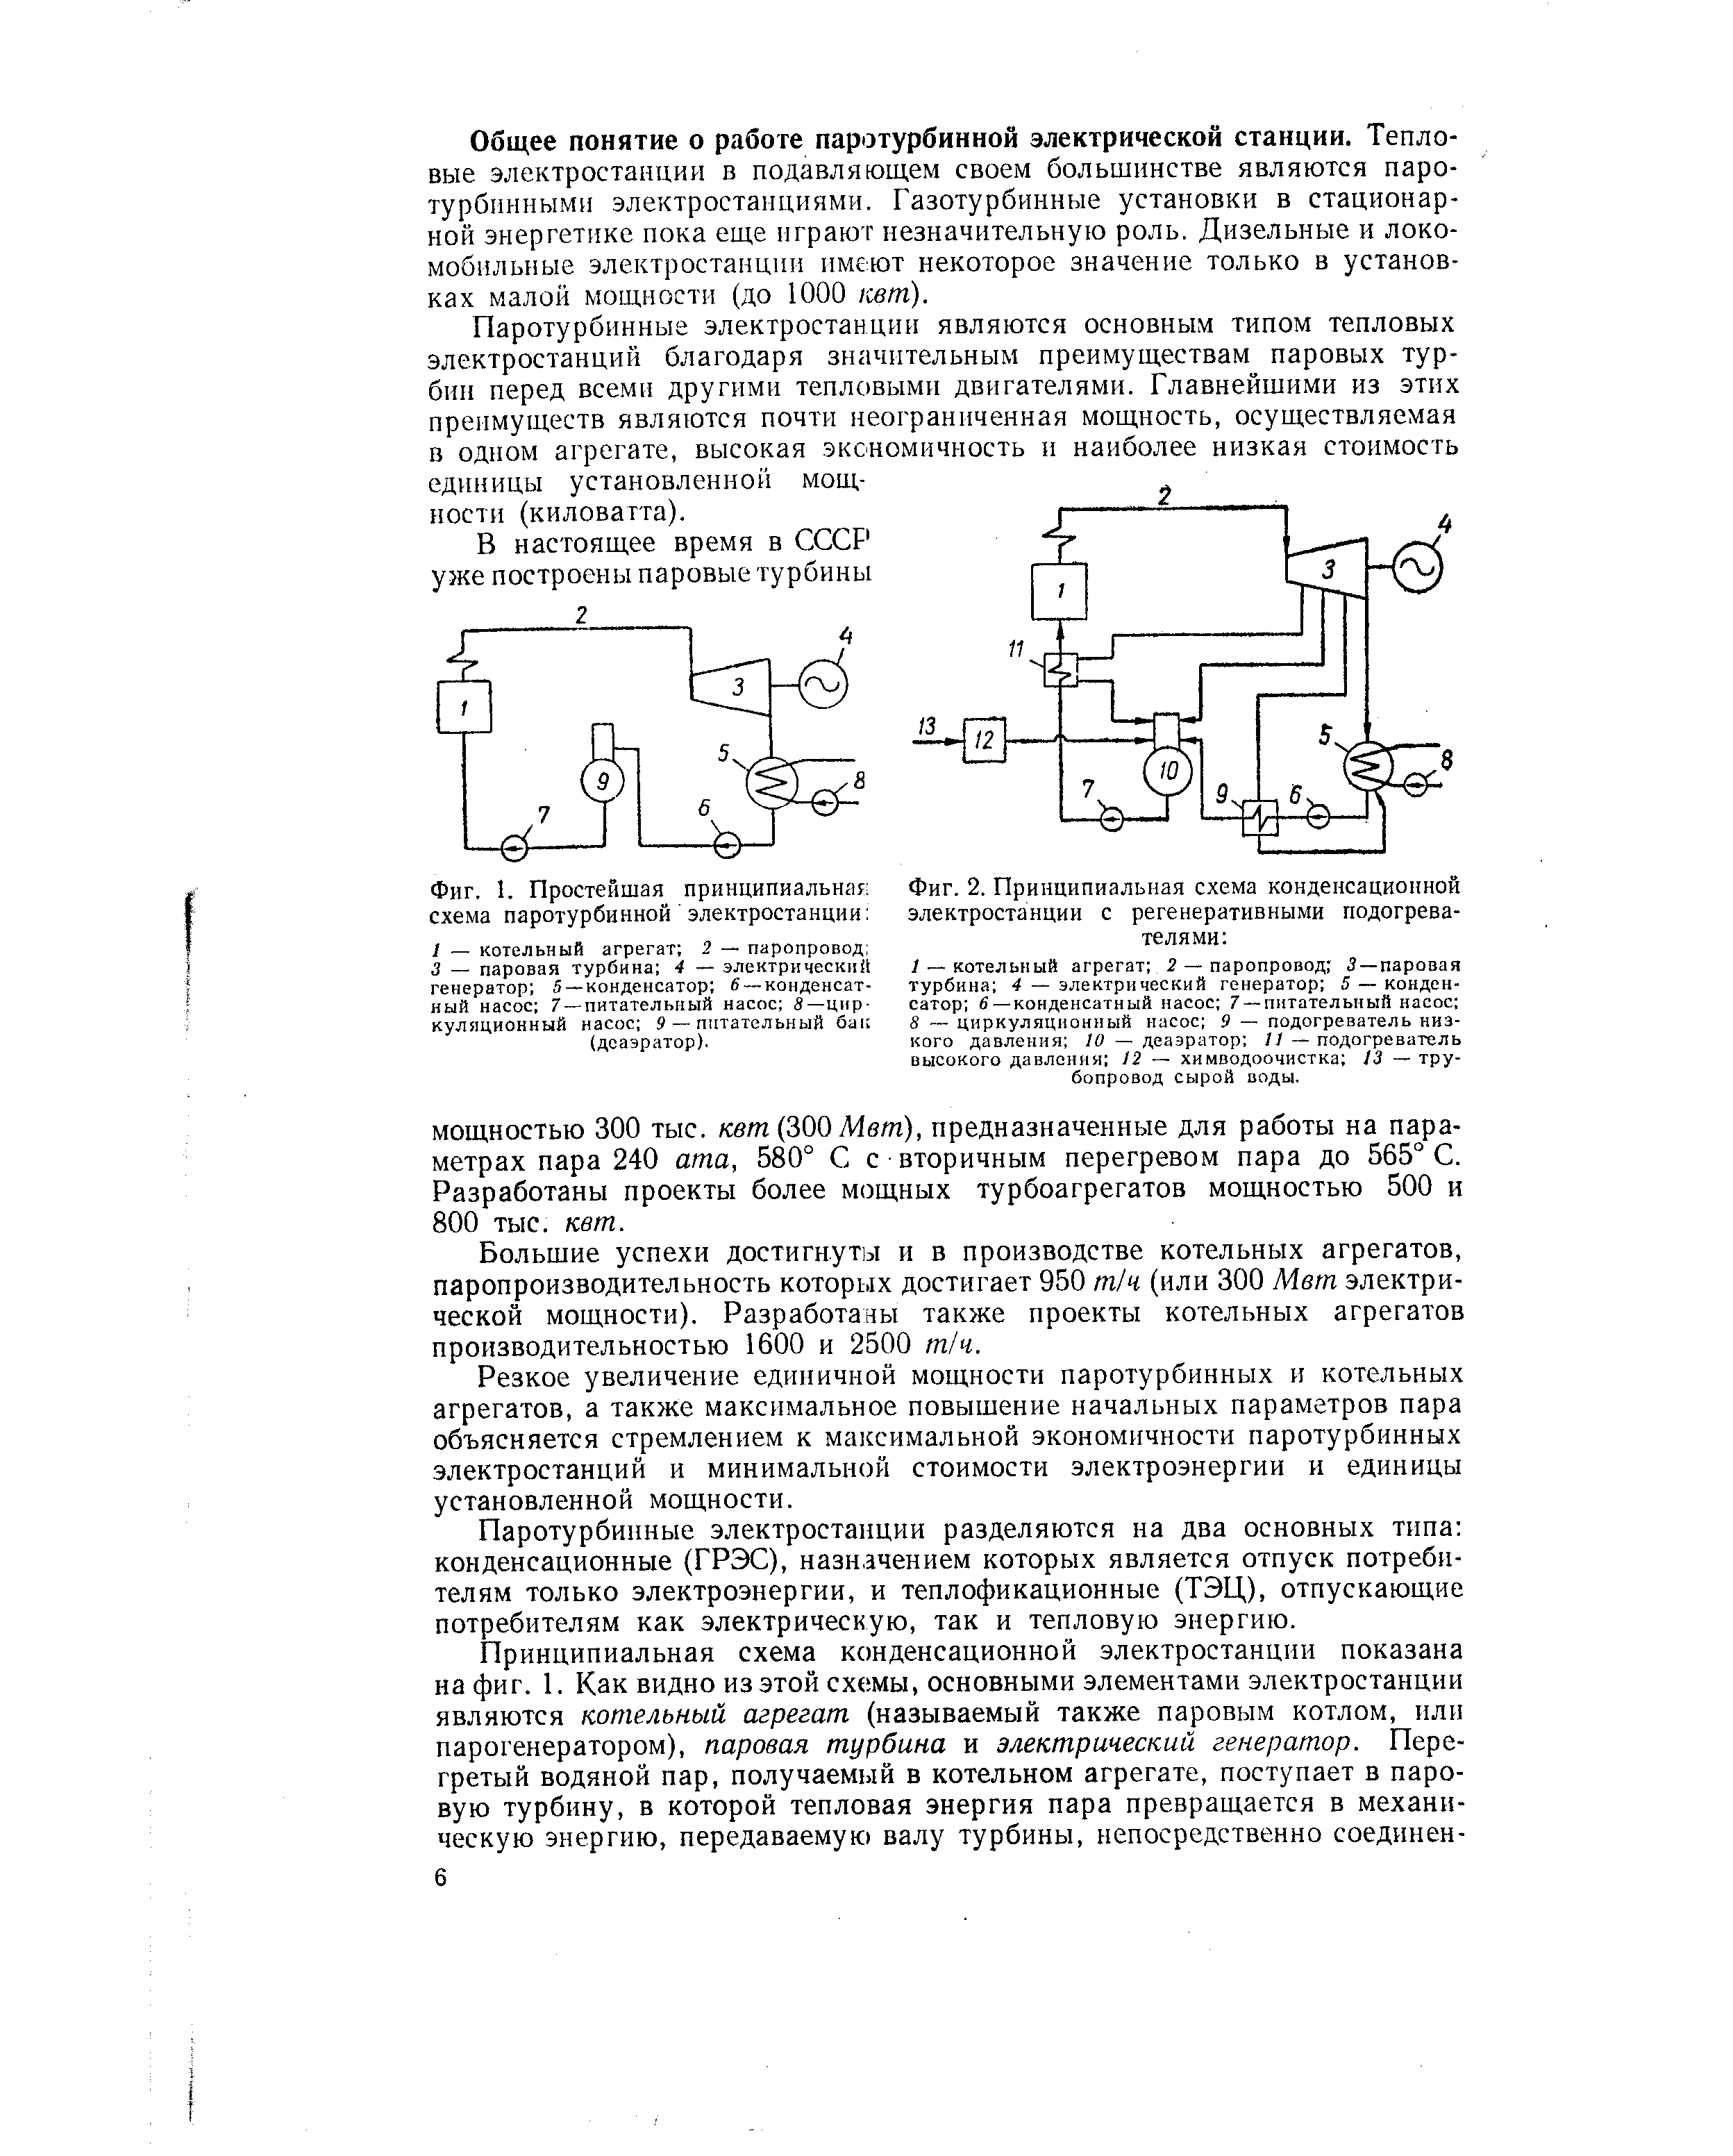 Фиг. 2. Принципиальная схема конденсационной электростанции с регенеративными подогревателями 
